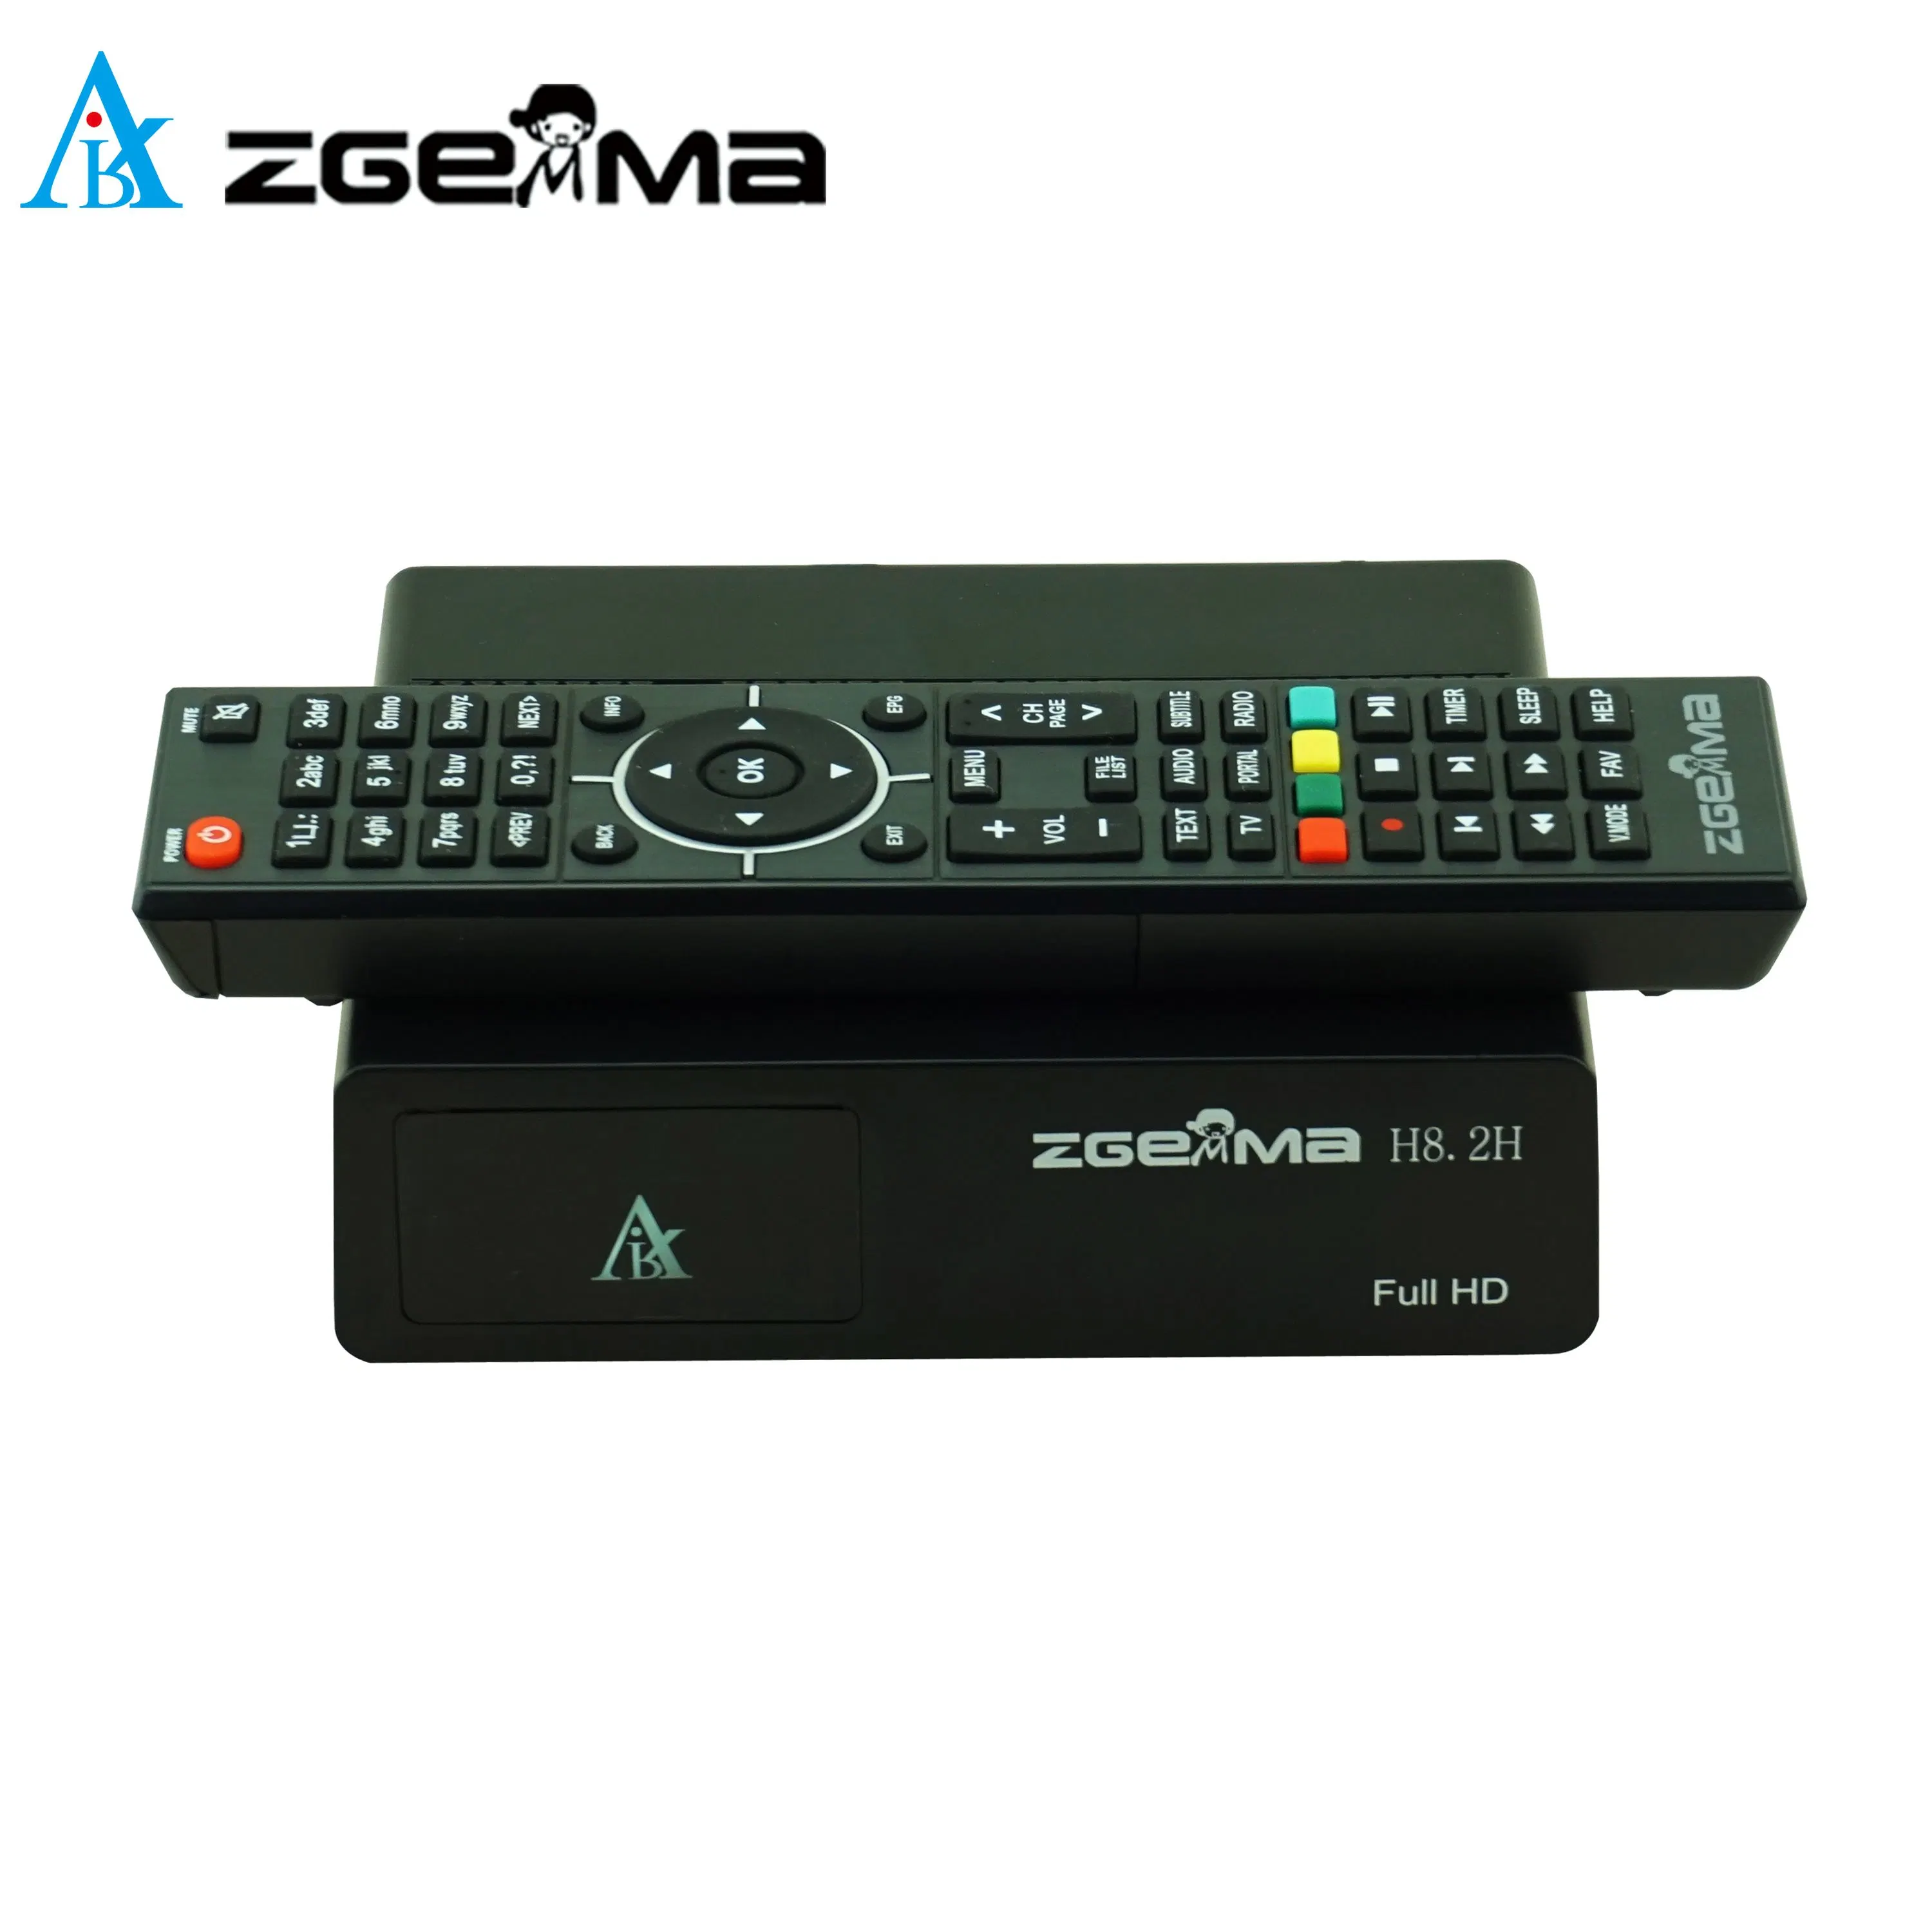 Zgemma H8.2h satellite TV Box - solution de divertissement parfaite avec Résolution Full HD 1080P